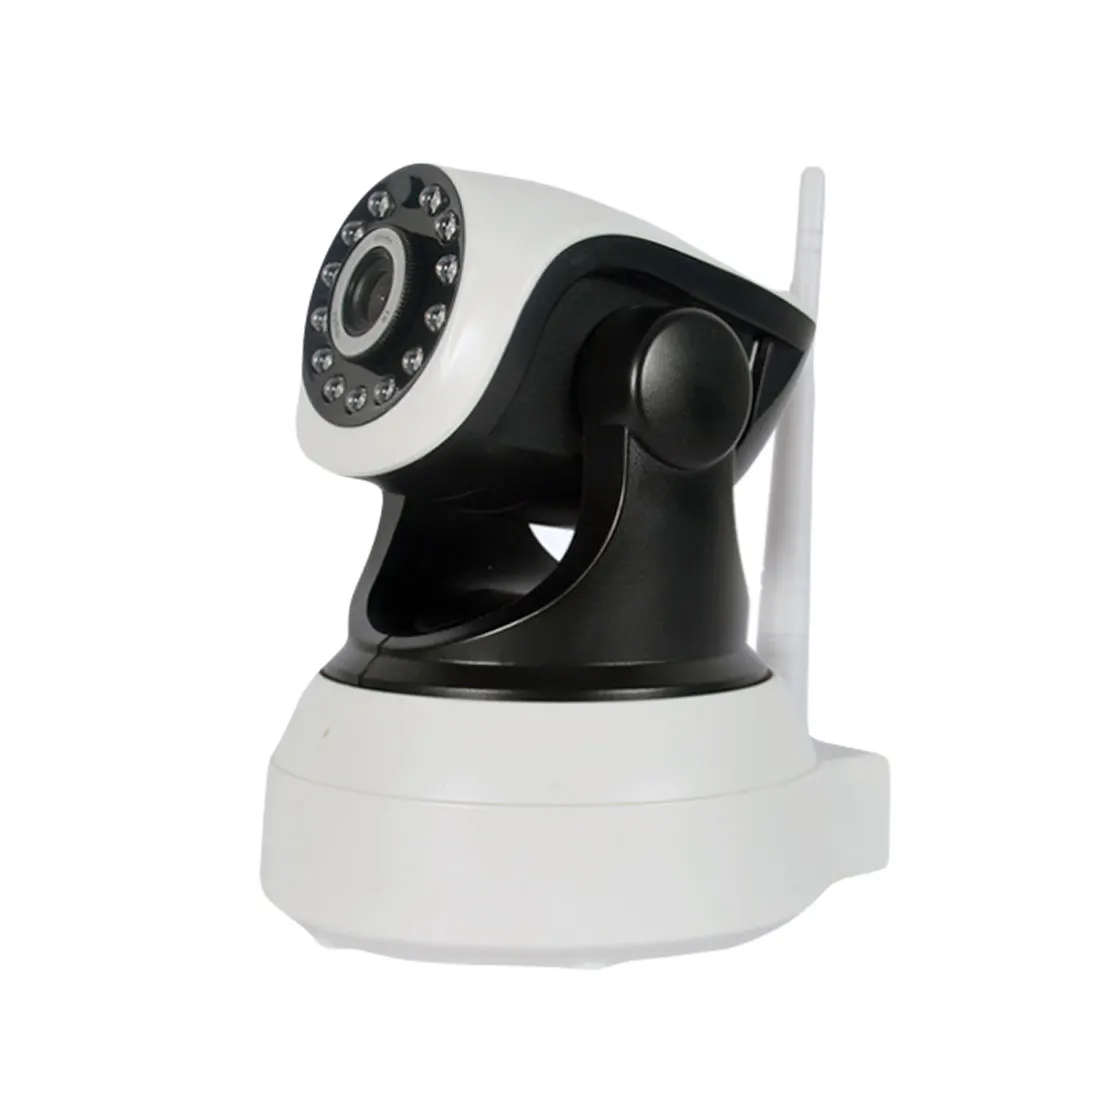 IP Беспроводная камера инфракрасная камера для записи HD видео сенсор микро камера s ночного видения Видеокамера система безопасности камеры